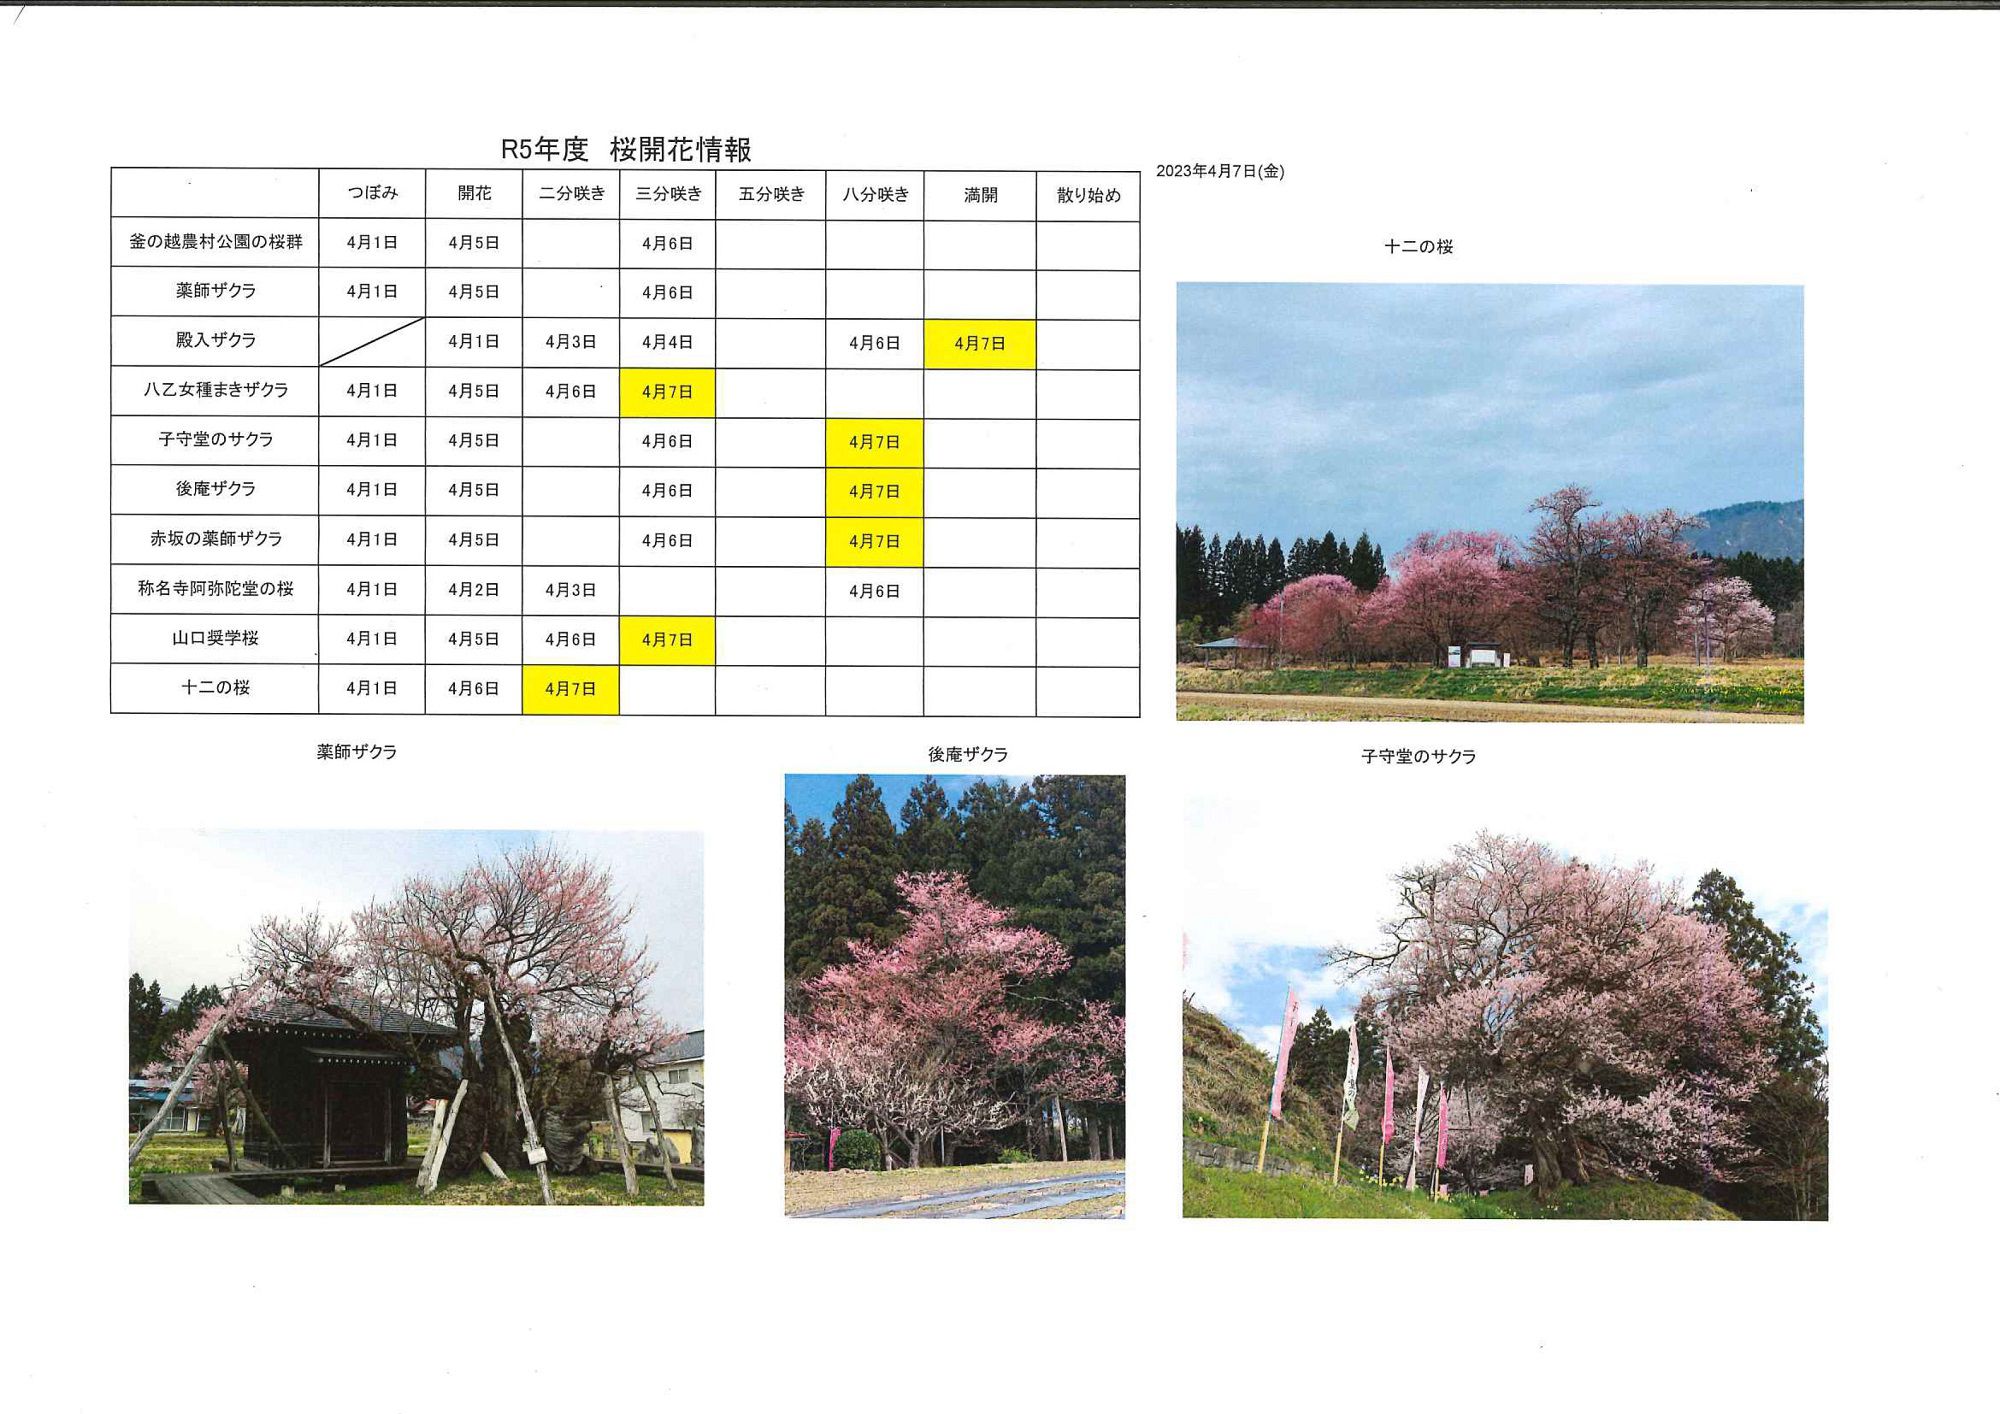 4月7日桜開花情報